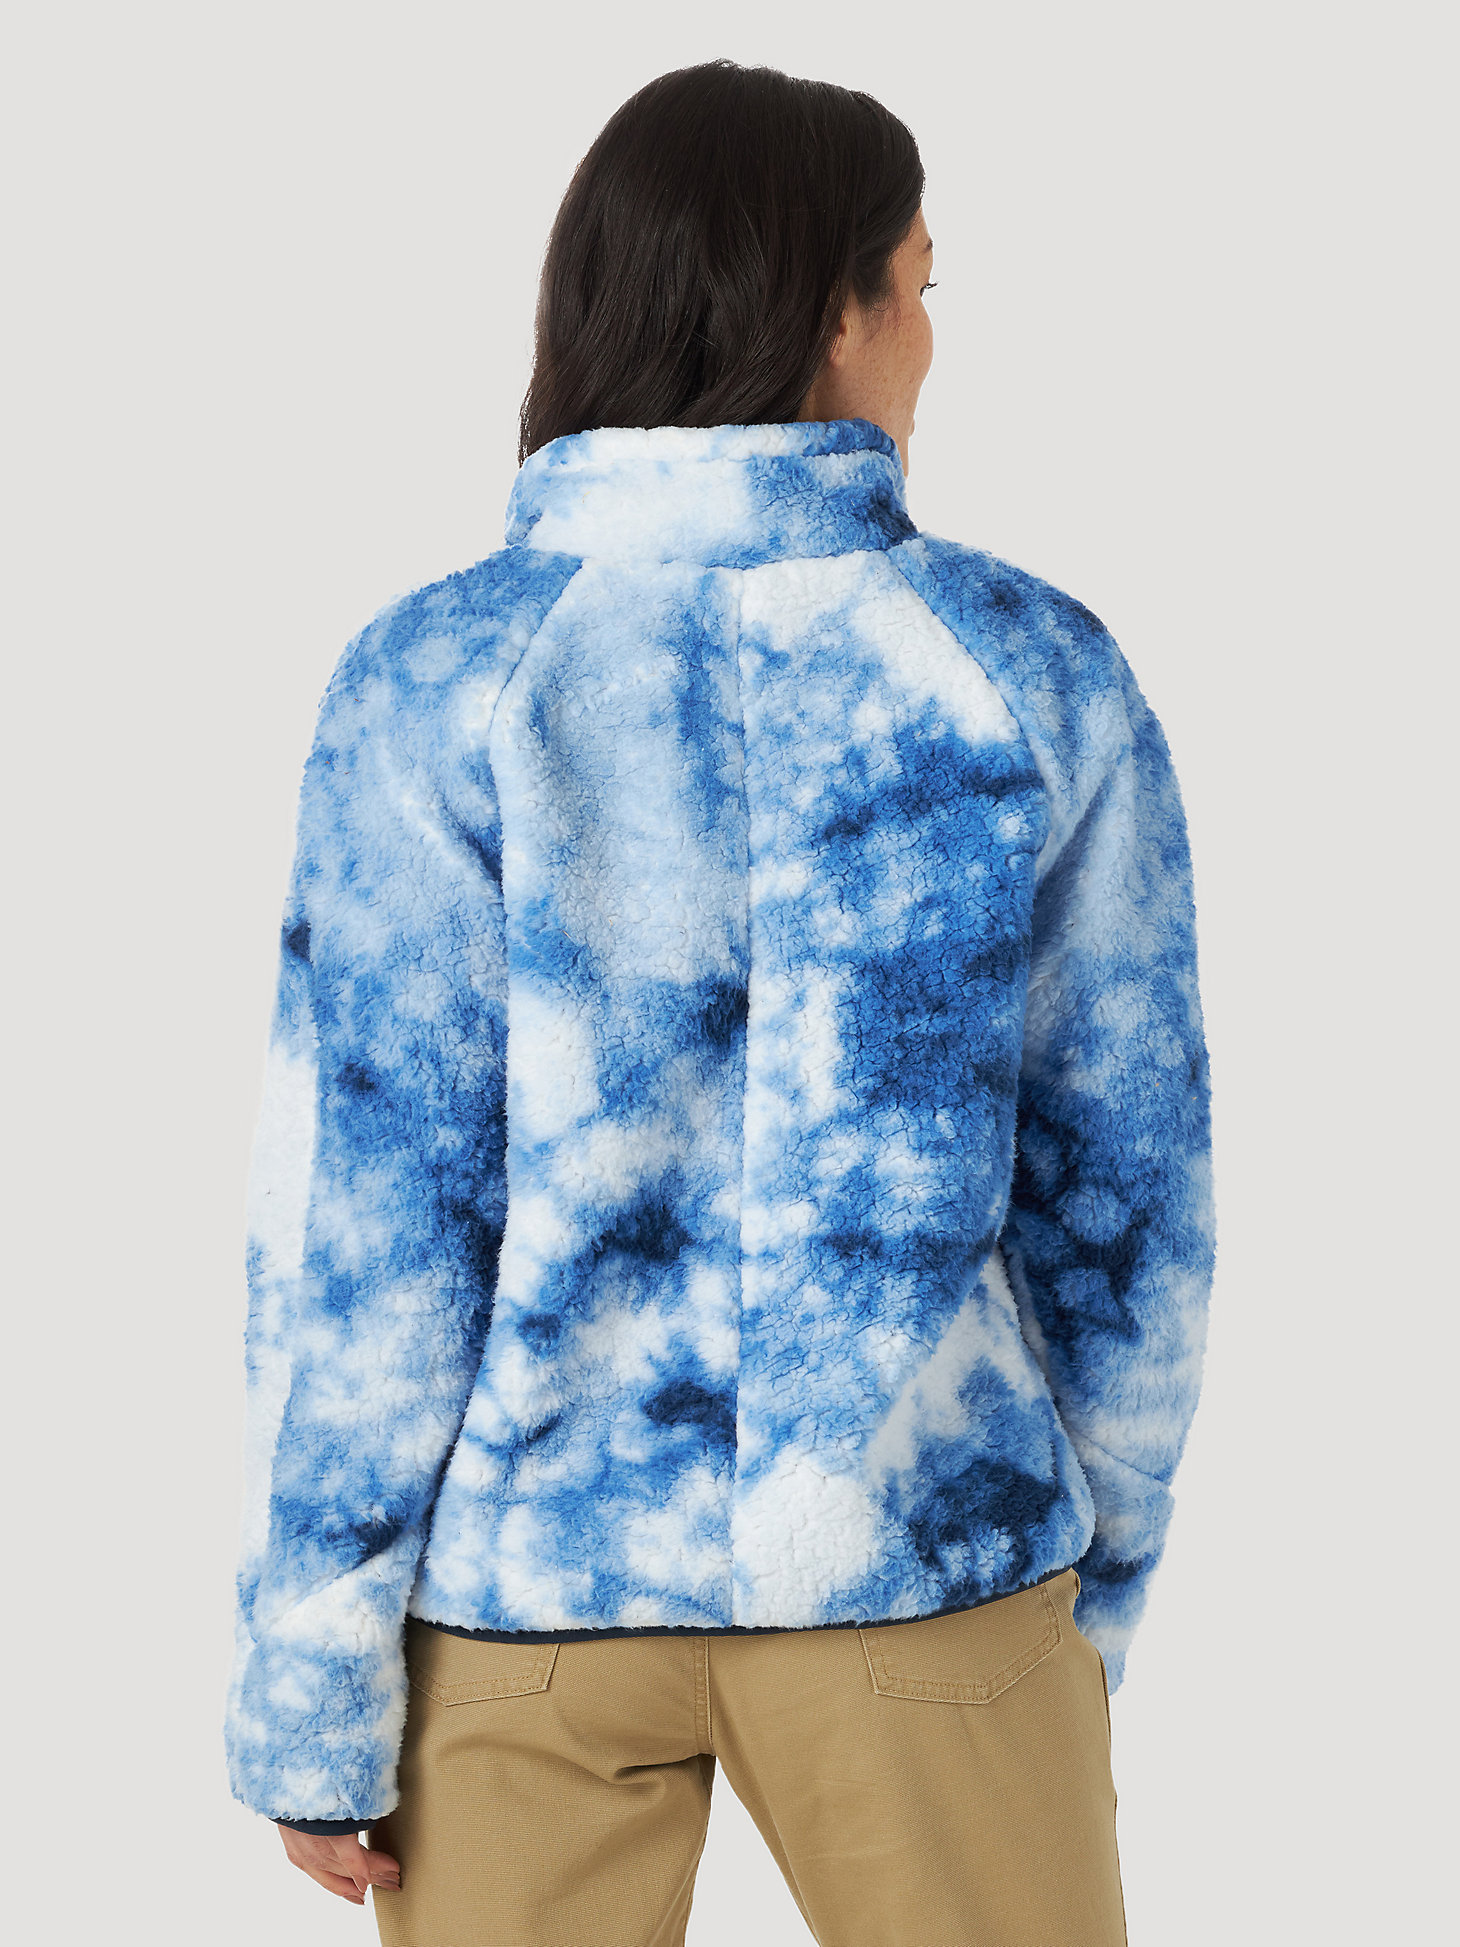 All Terrain Gear Sherpa Fleece Jacket in Blue Tie Dye alternative view 1